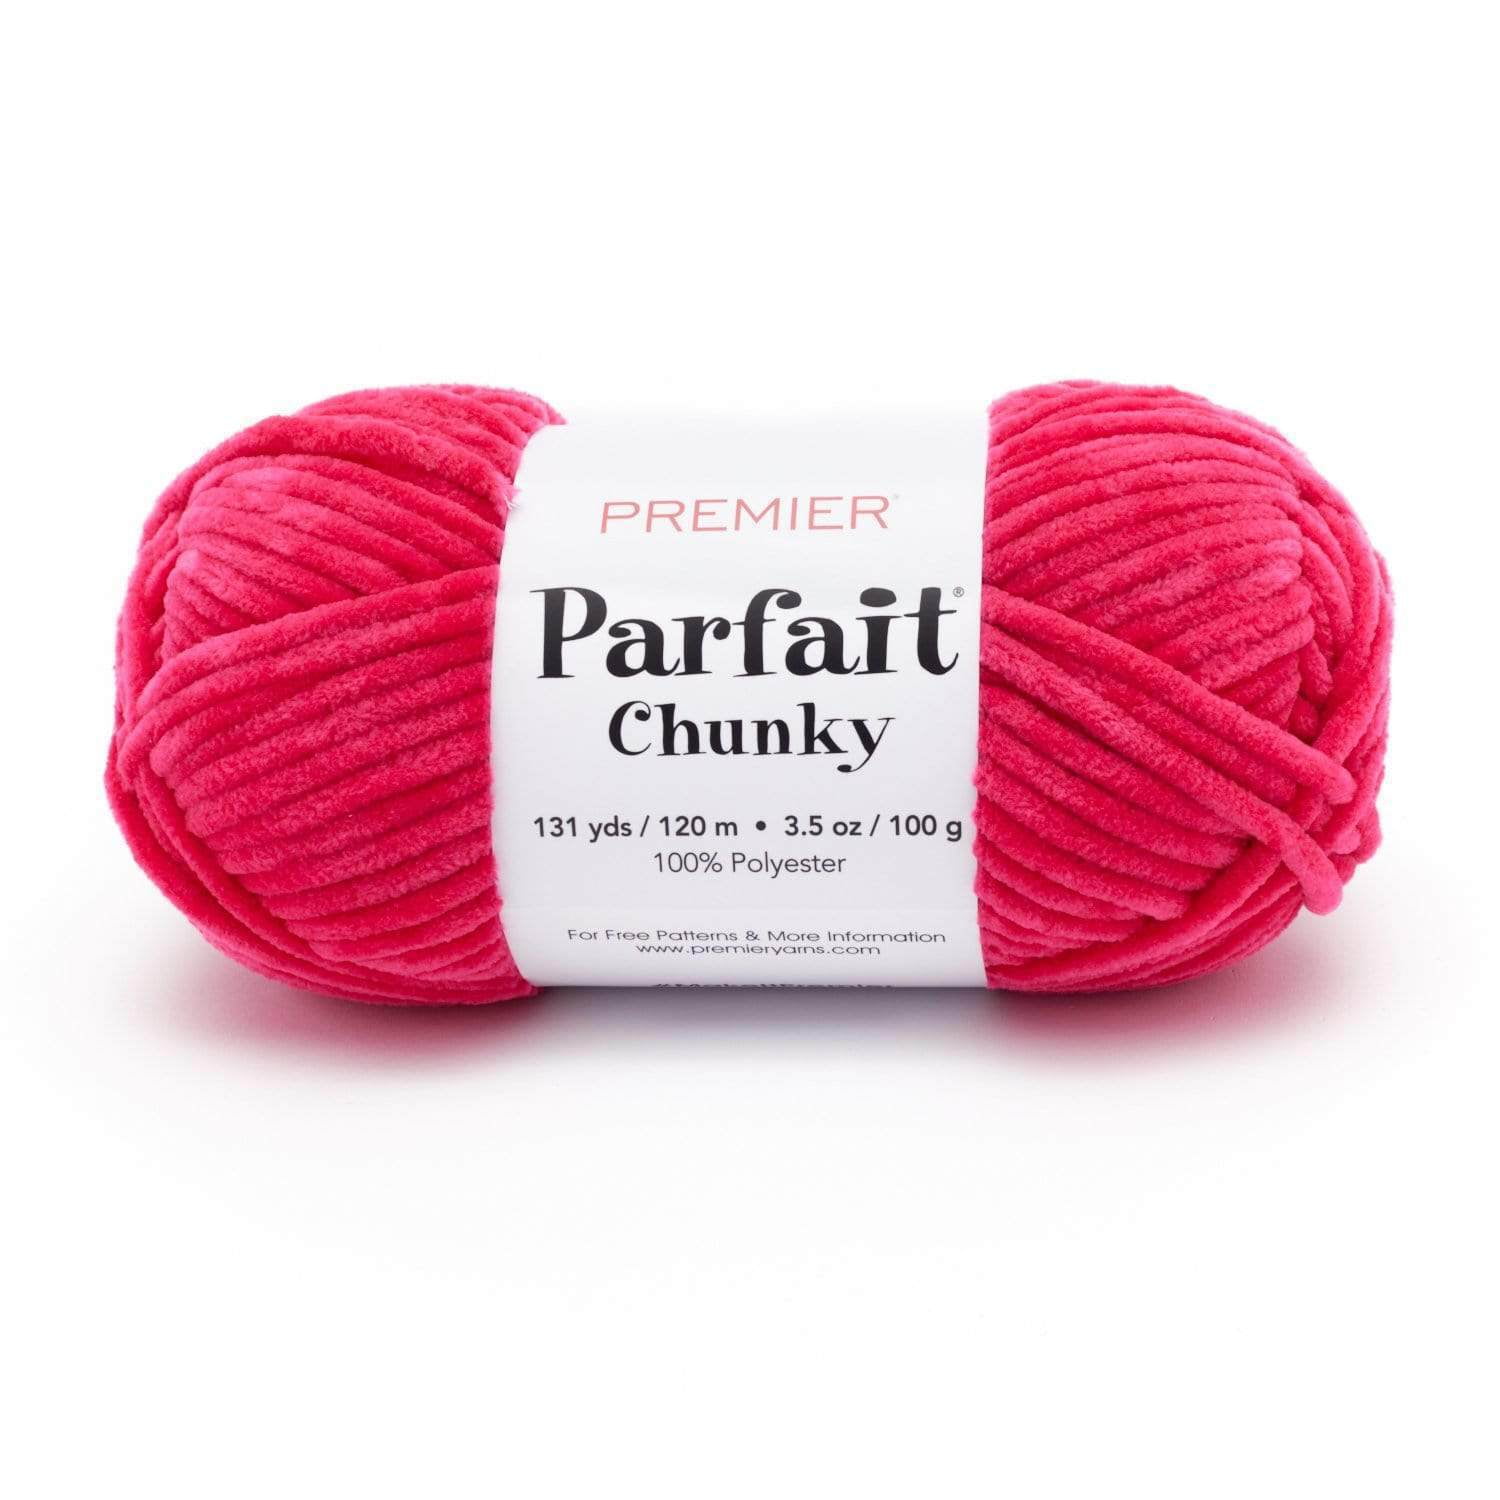 Premier Parfait Chunky Yarn-Bright Pink 1150-13 - GettyCrafts